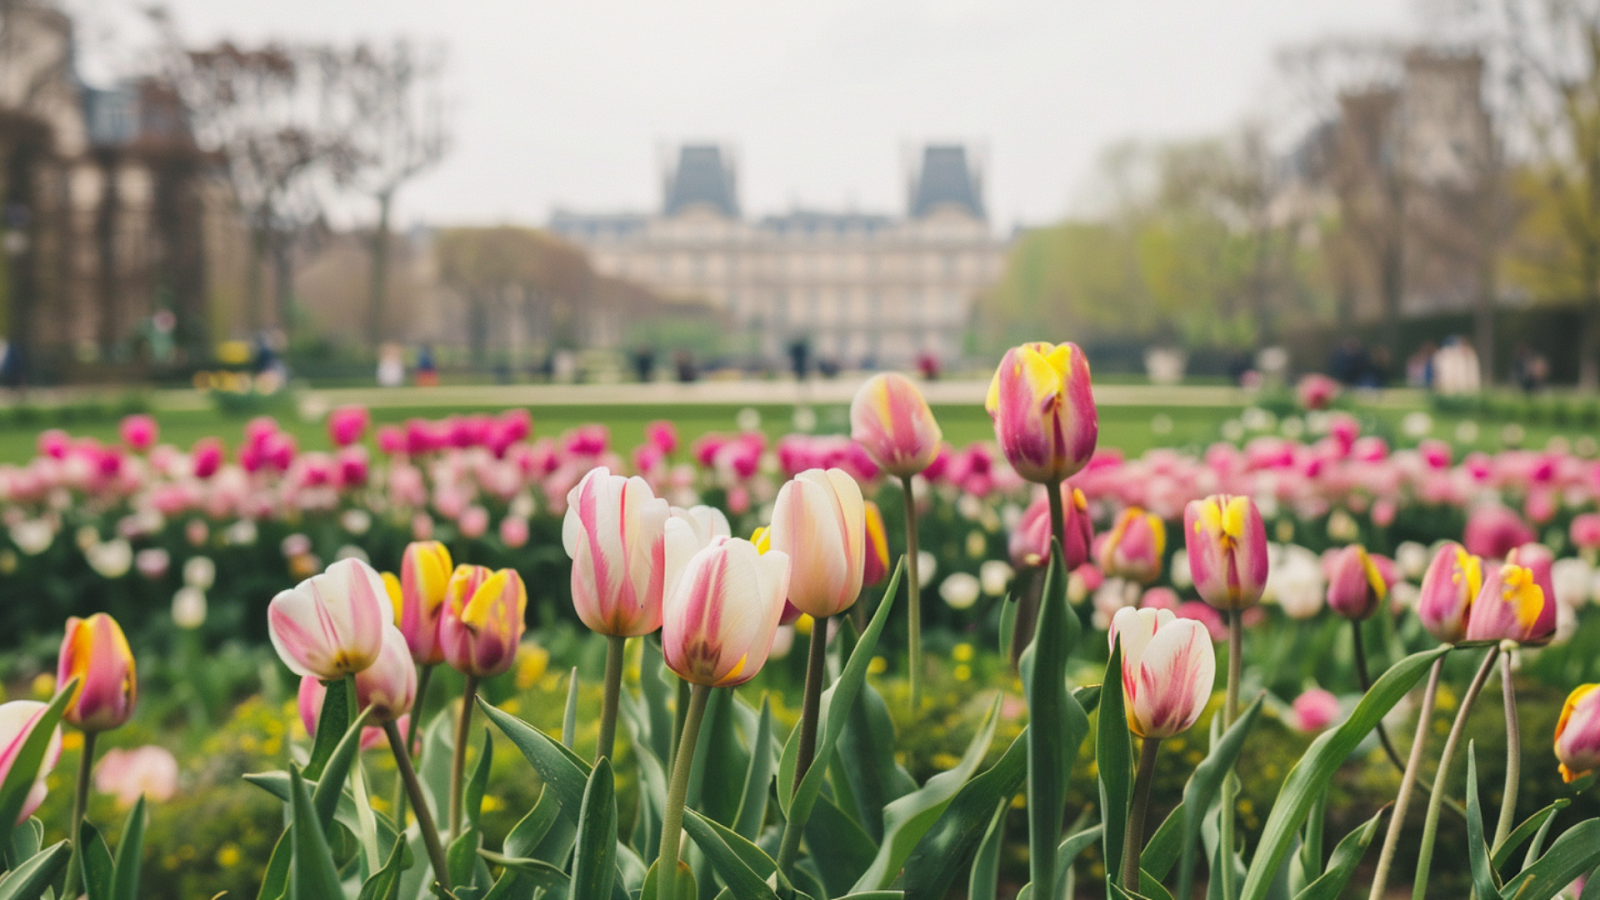 Flowers blooming on Tuileries Garden in Paris